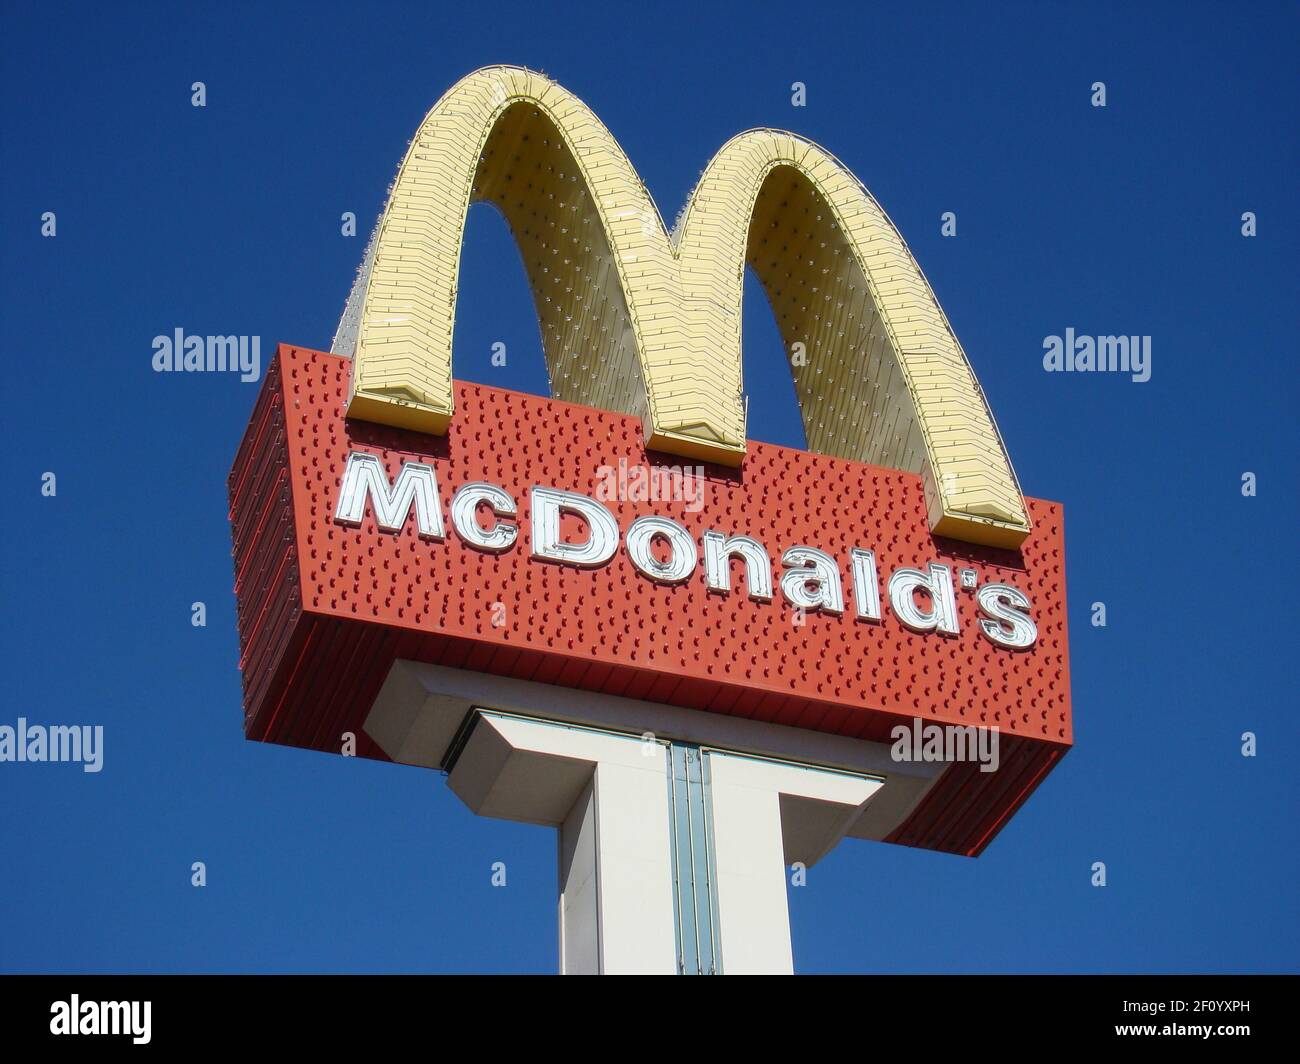 Las Vegas, NV - 15 novembre 2007: Cartello McDonald's con archi dorati al neon e cielo blu luminoso Foto Stock